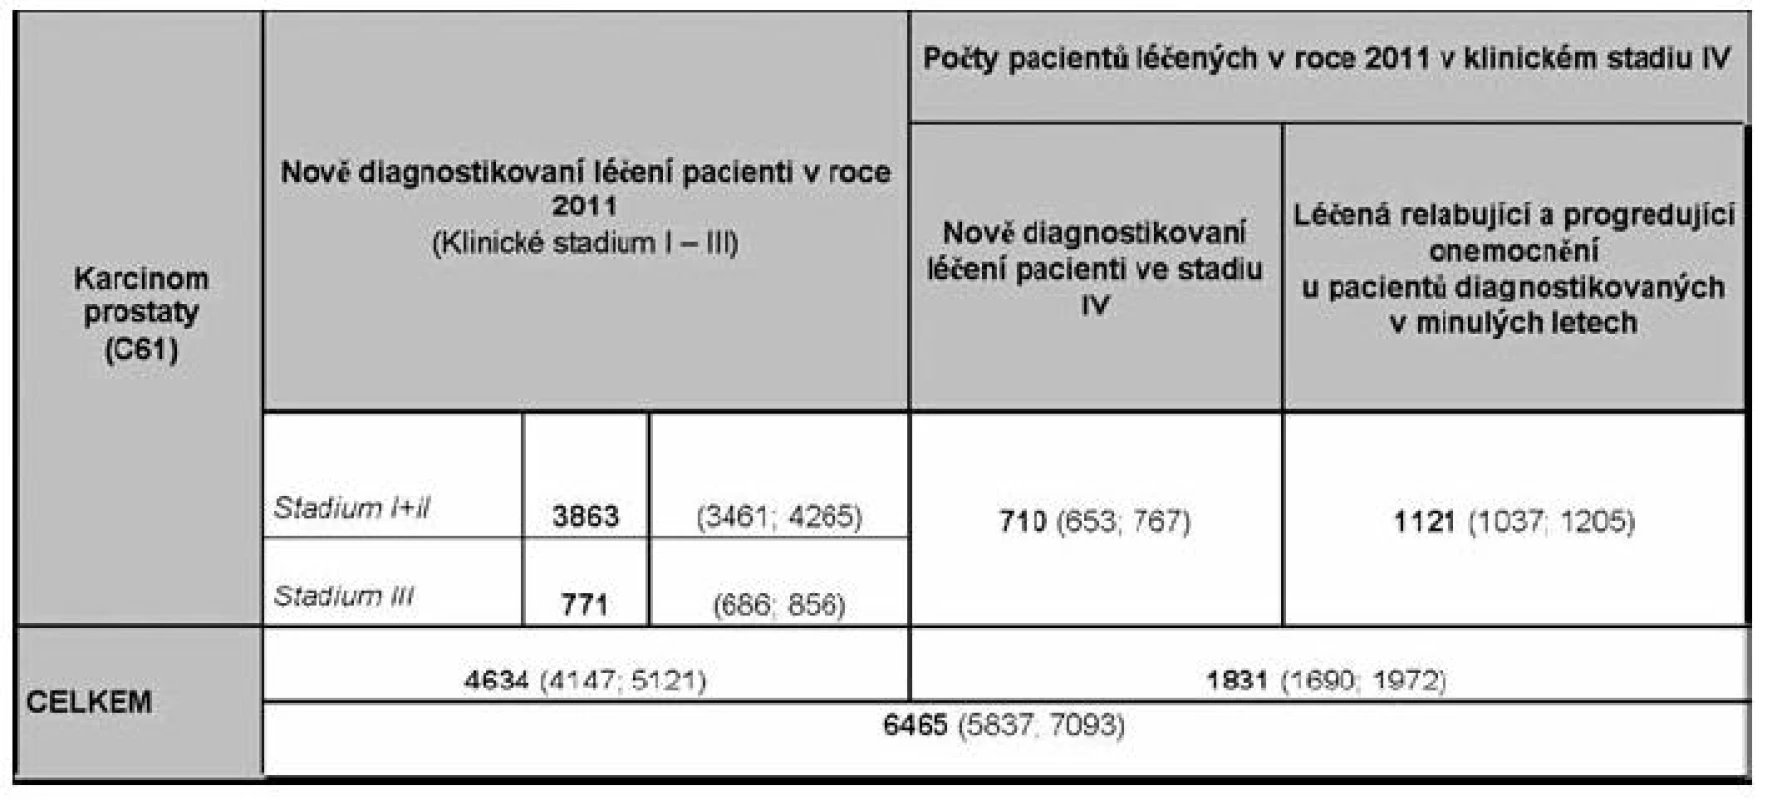 Souhrnný odhad počtu pacientů potenciálně léčených v roce 2011
(Data Institutu biostatiky a analýz MU v Brně).